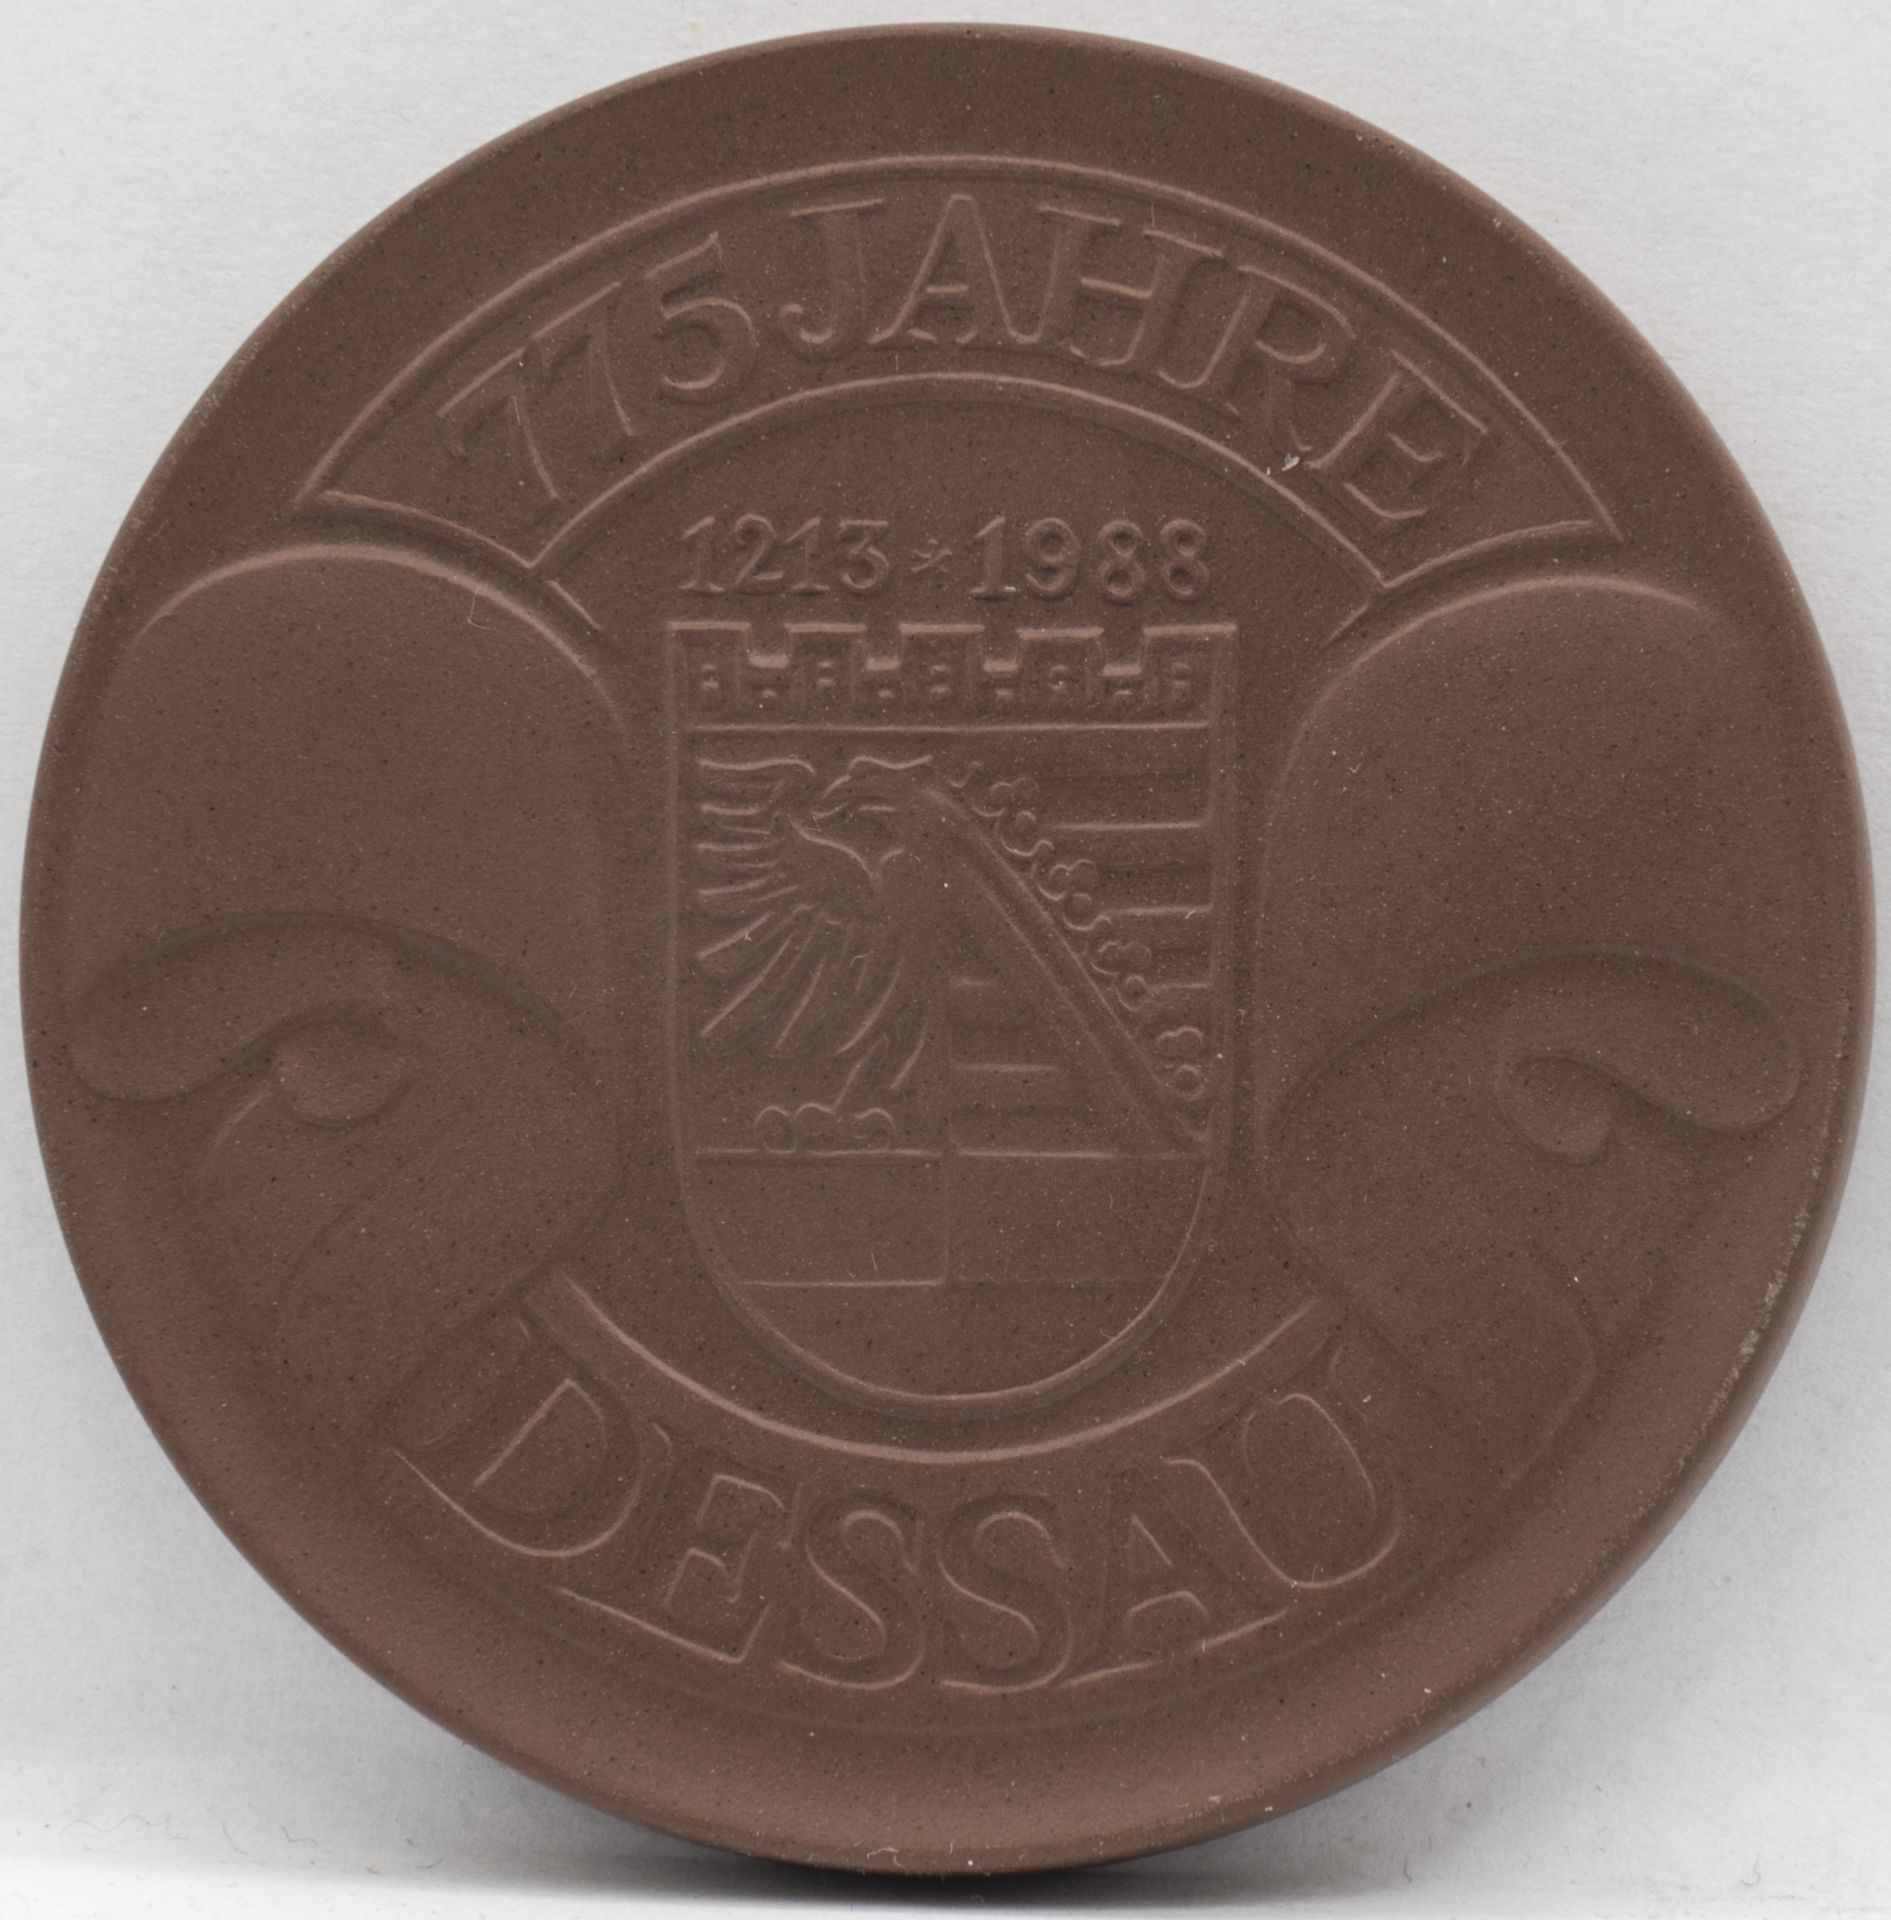 Meissen Porzellan - Medaille 775 Jahre Dessau. Durchmesser: ca. 67 mm. Erhaltung: VZ. - Bild 2 aus 2